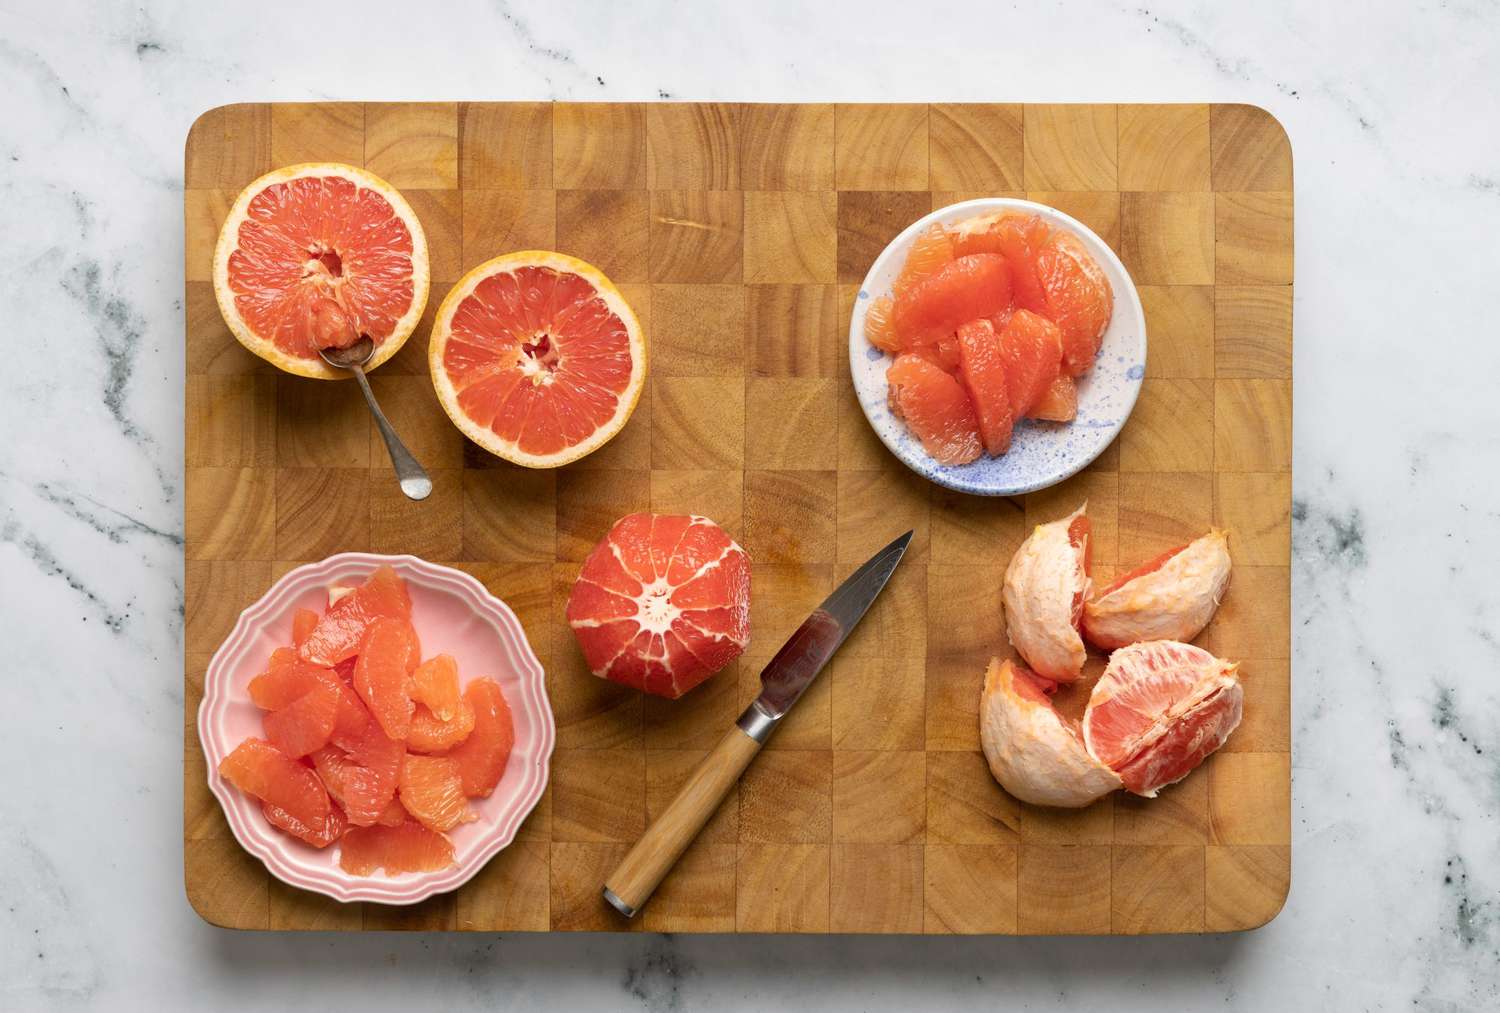 Top 5 health benefits of grapefruit